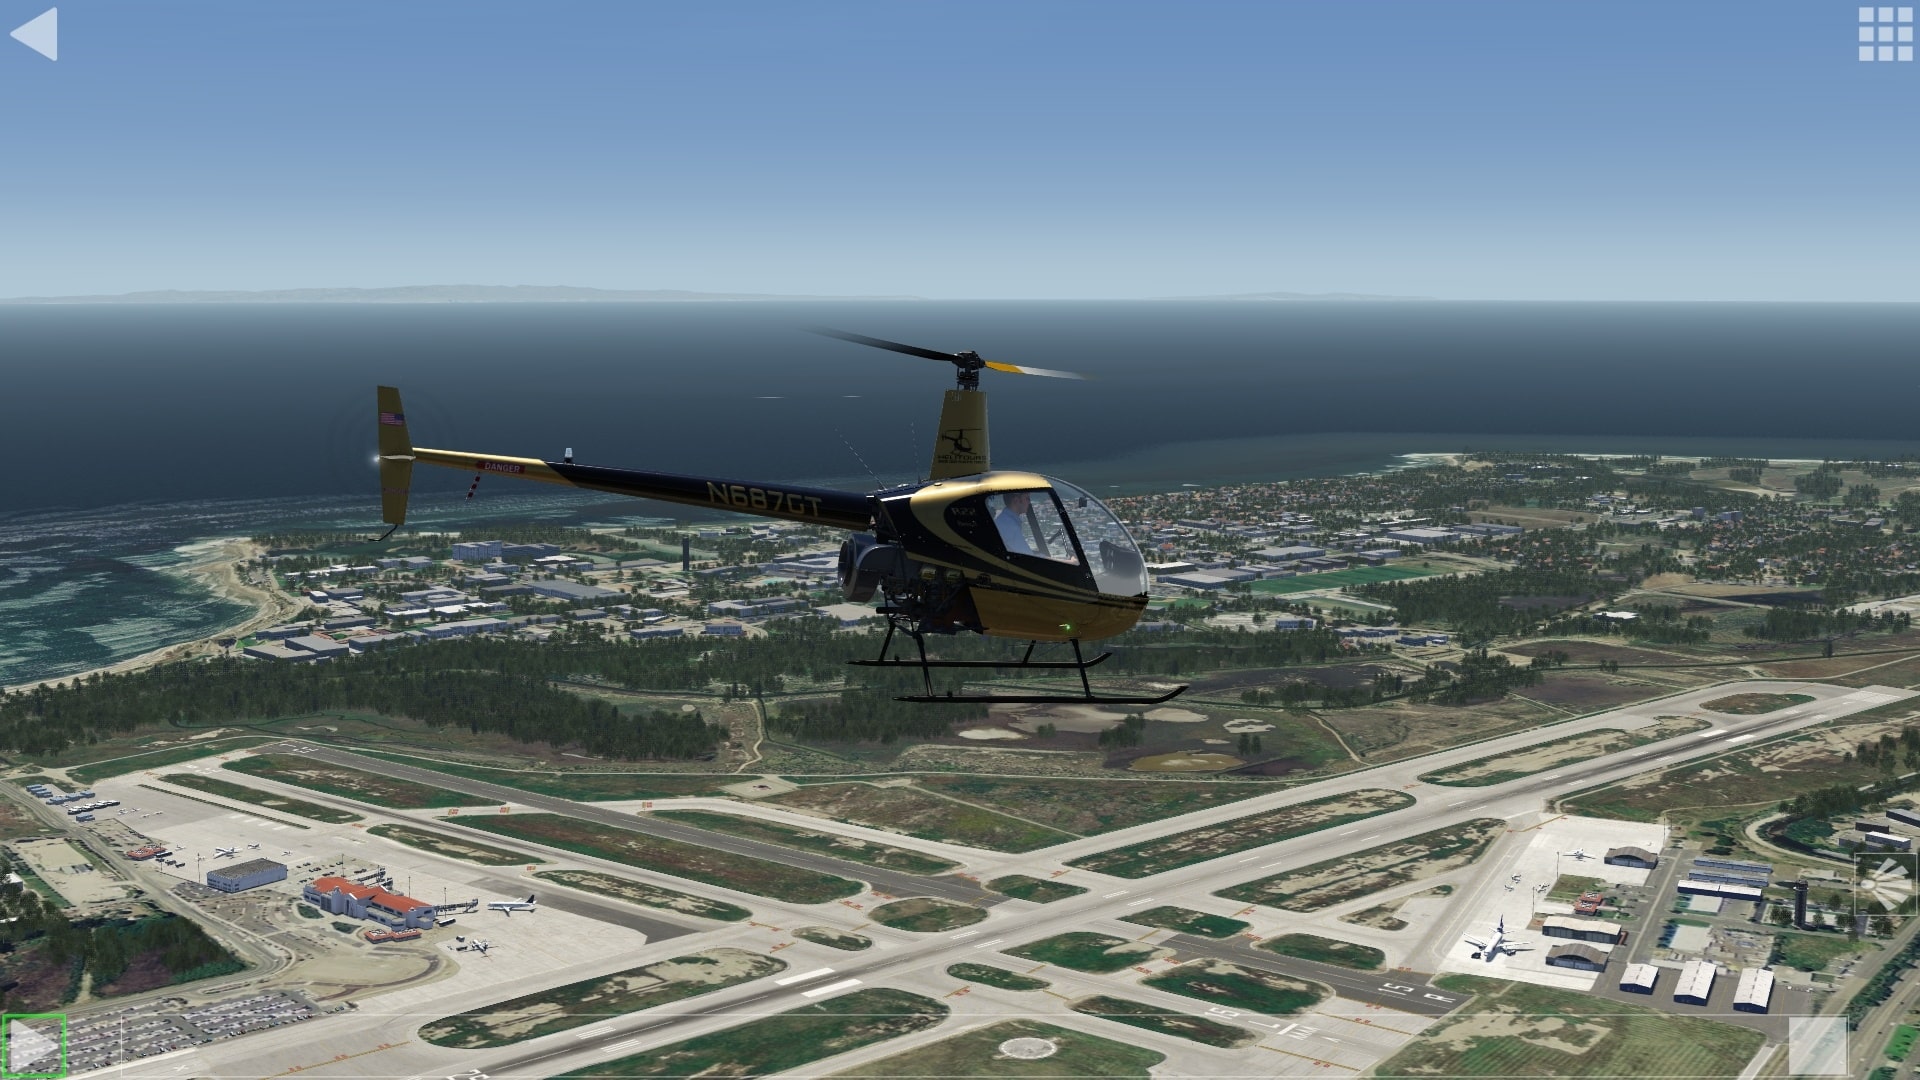 (Repetición de mi primer vuelo simulado en helicóptero desde los tiempos de PlayStation 1. Sigo estando orgulloso. El modelo de vuelo de la versión Aerofly FS del Robinson R22 también se utiliza en Suiza en un dispositivo de entrenamiento de simulación de vuelo certificado por la EASA)